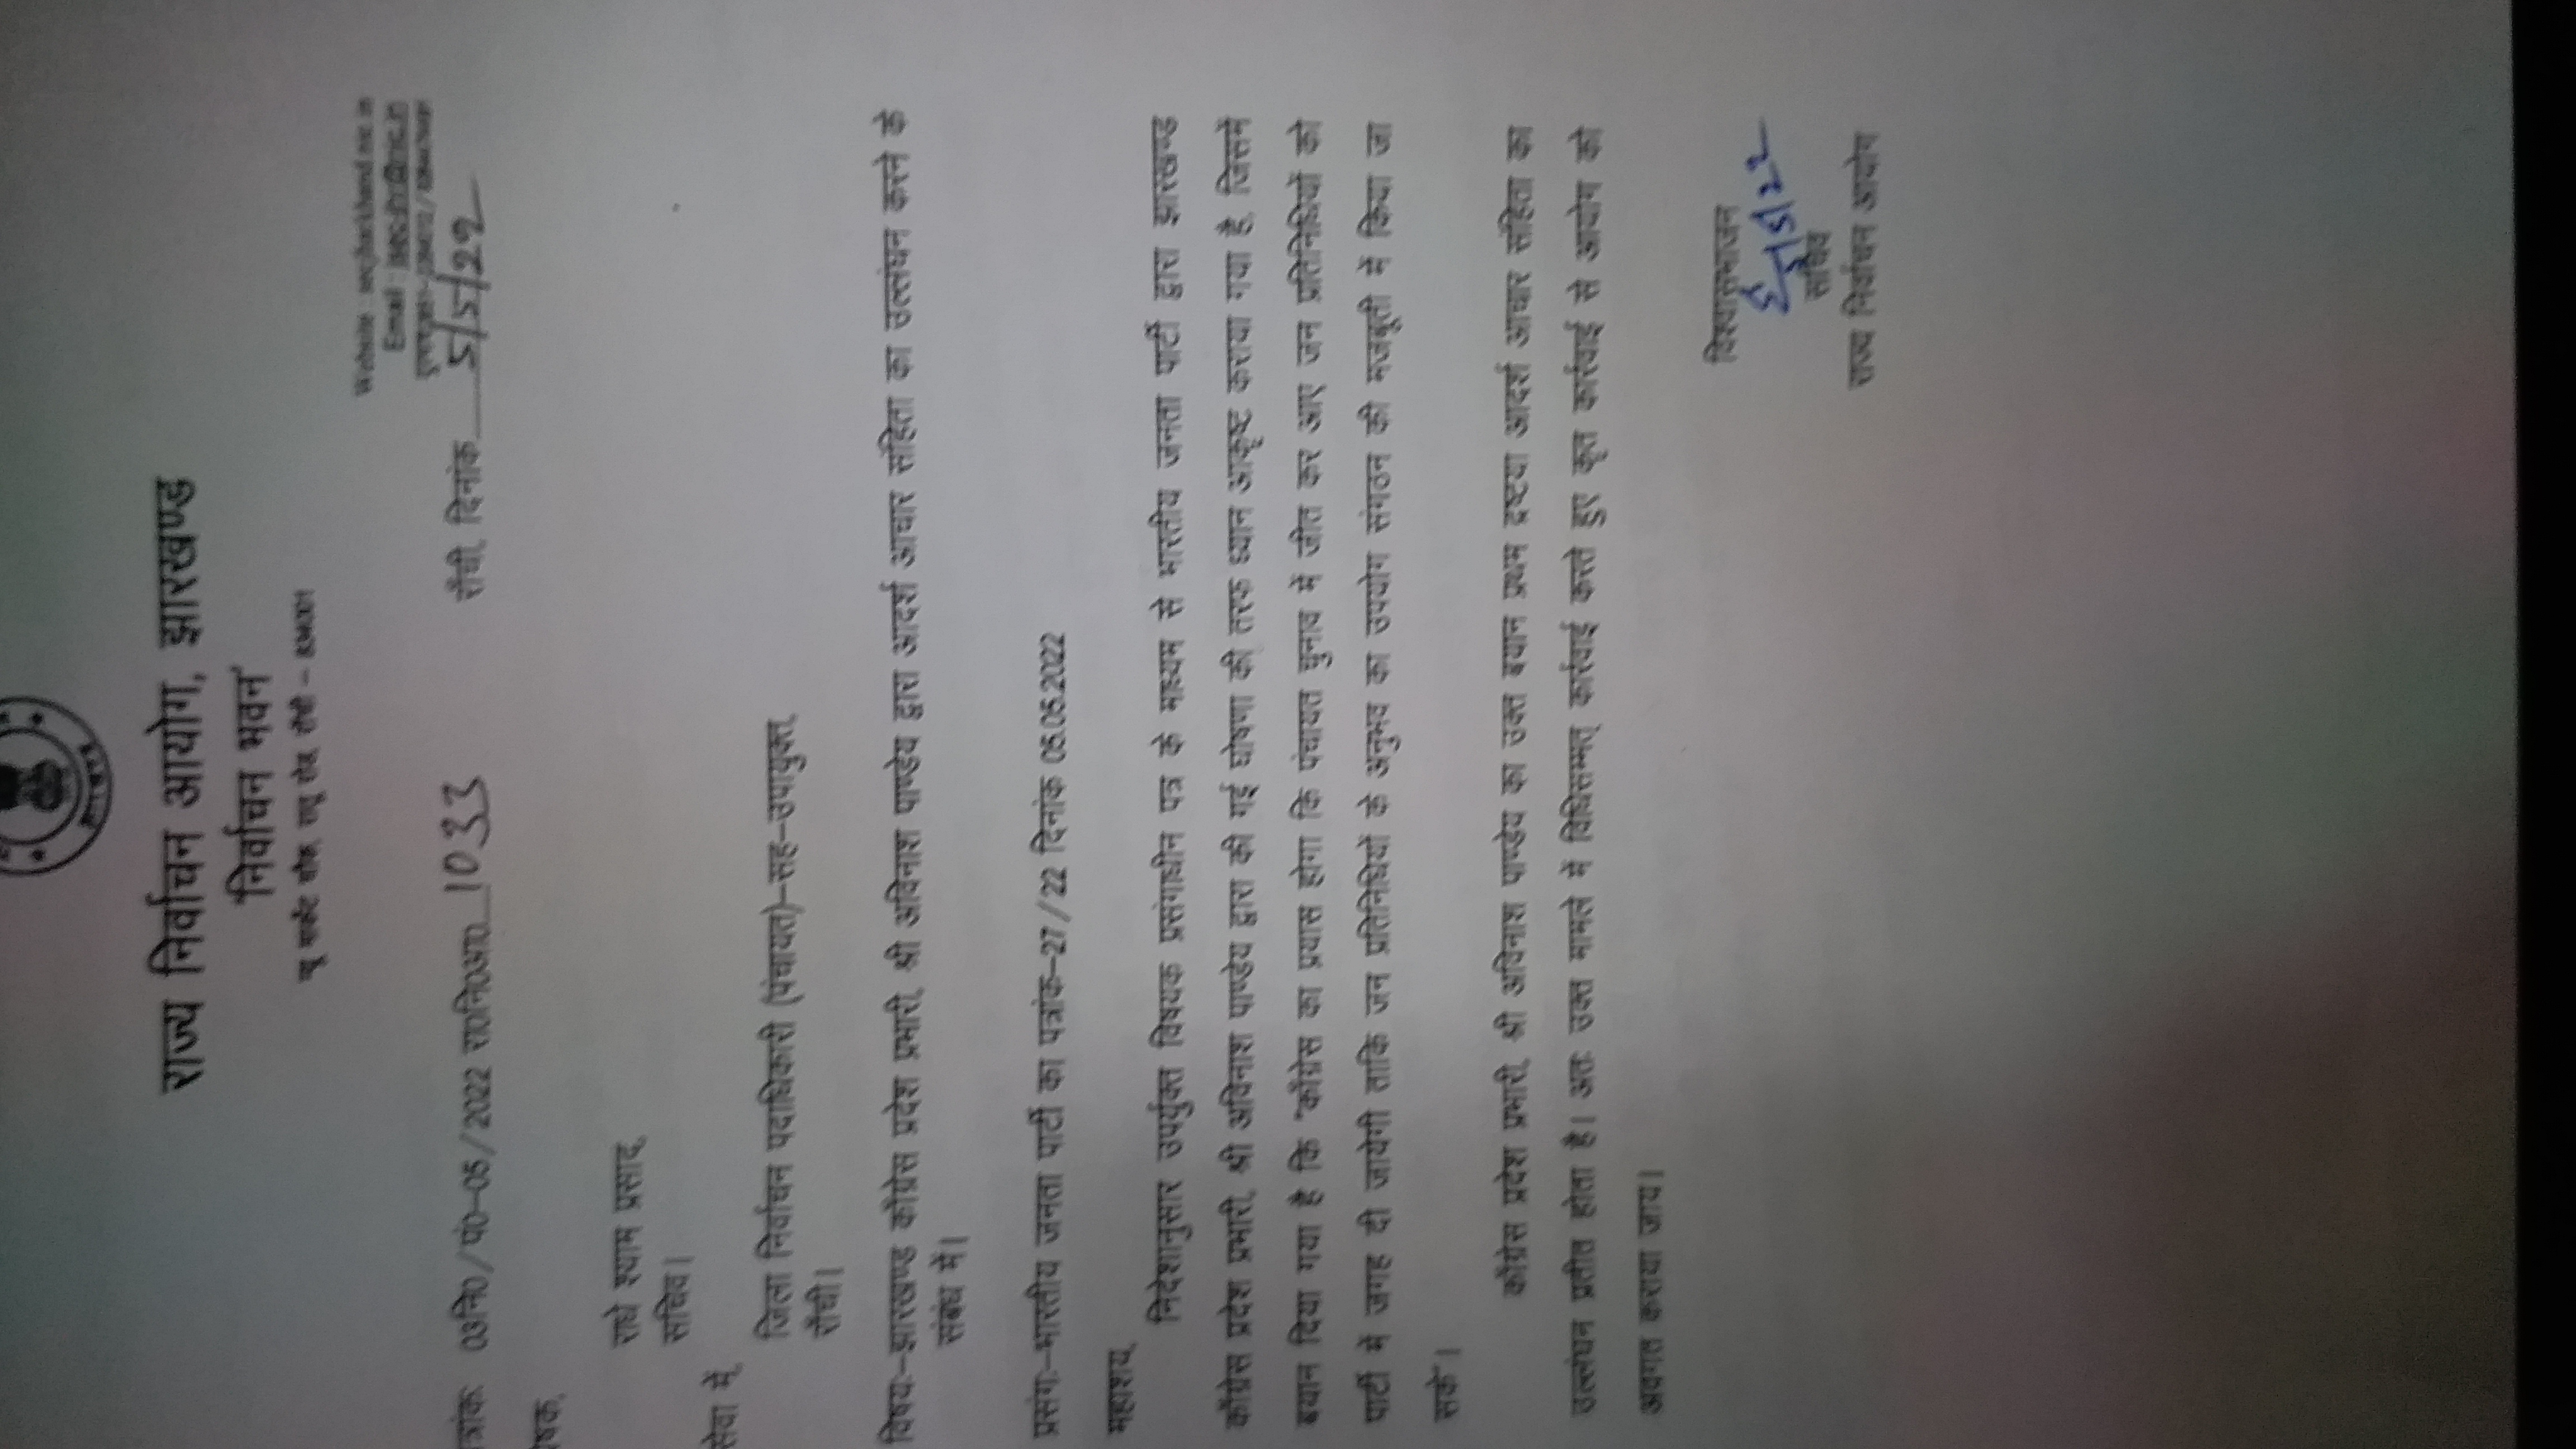 झारखंड प्रदेश कांग्रेस प्रभारी अविनाश पांडेय पर रांची कोतवाली थाने में प्राथमिकी दर्ज